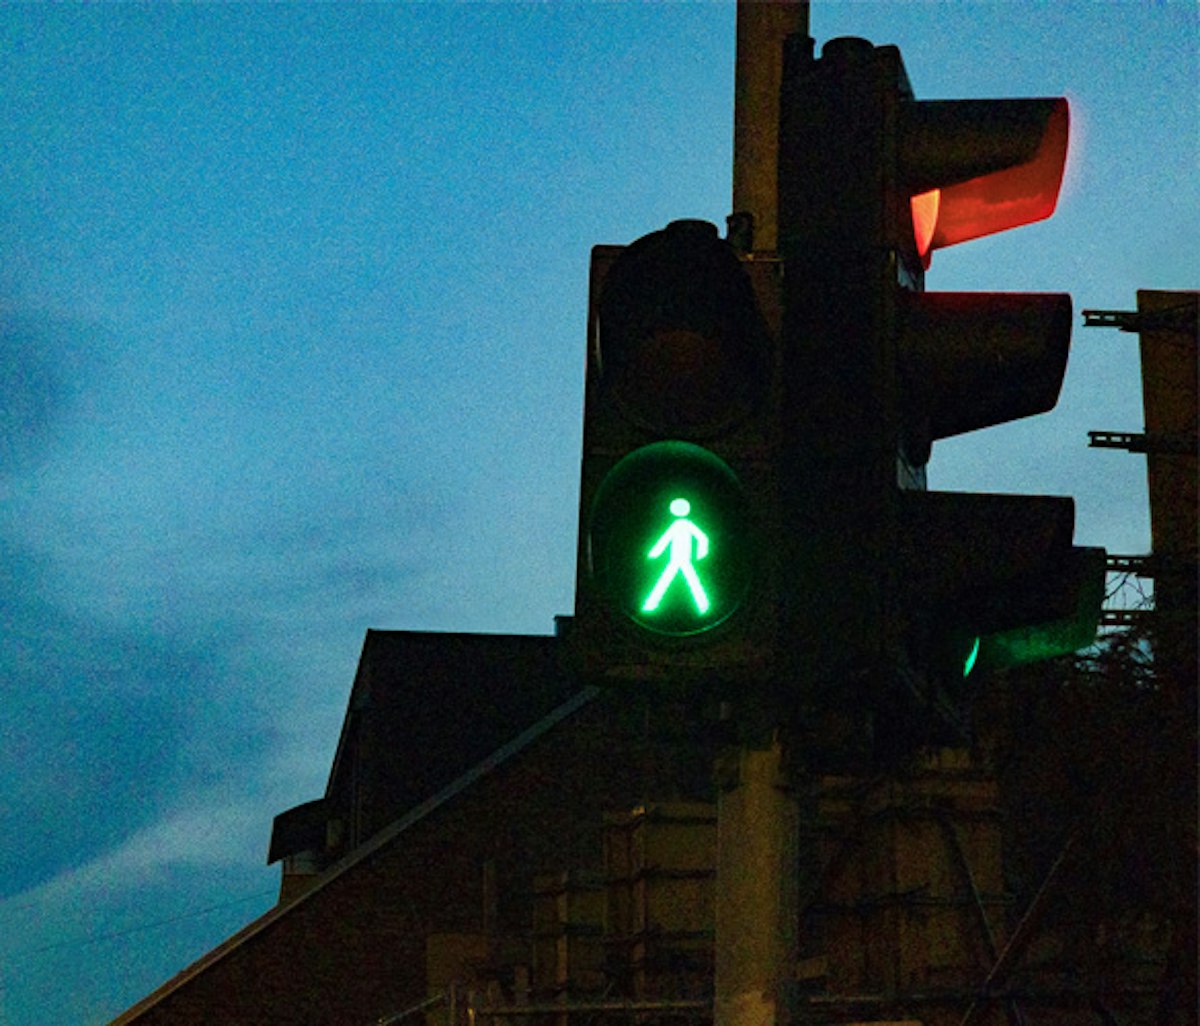 Green pedestrian traffic light signal against a dusk sky.